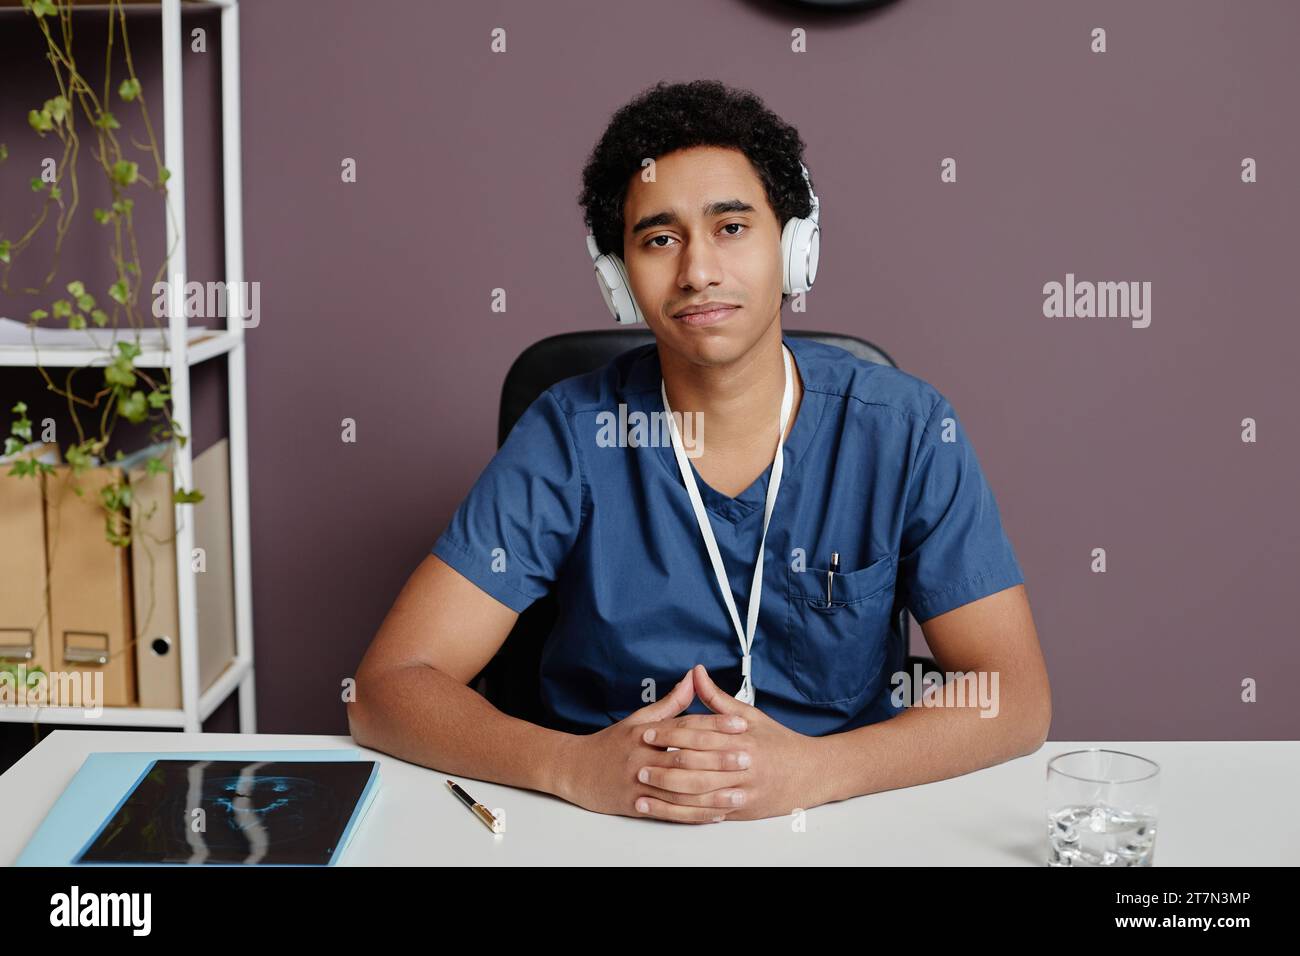 Ritratto frontale di un giovane arabo come medico seduto sul posto di lavoro in clinica e ascoltando musica con le cuffie e lo spazio fotocopie Foto Stock